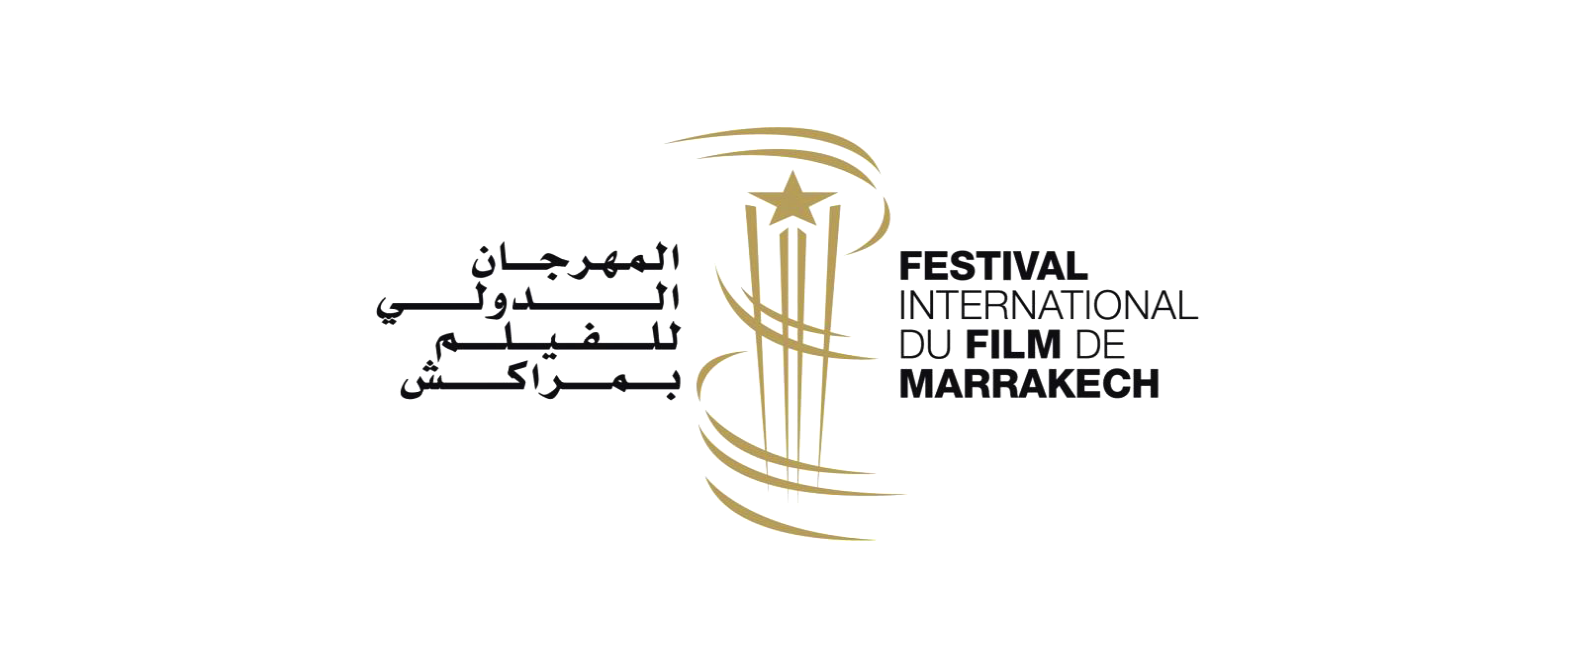 Le Festival International du Film de Marrakech est de retour